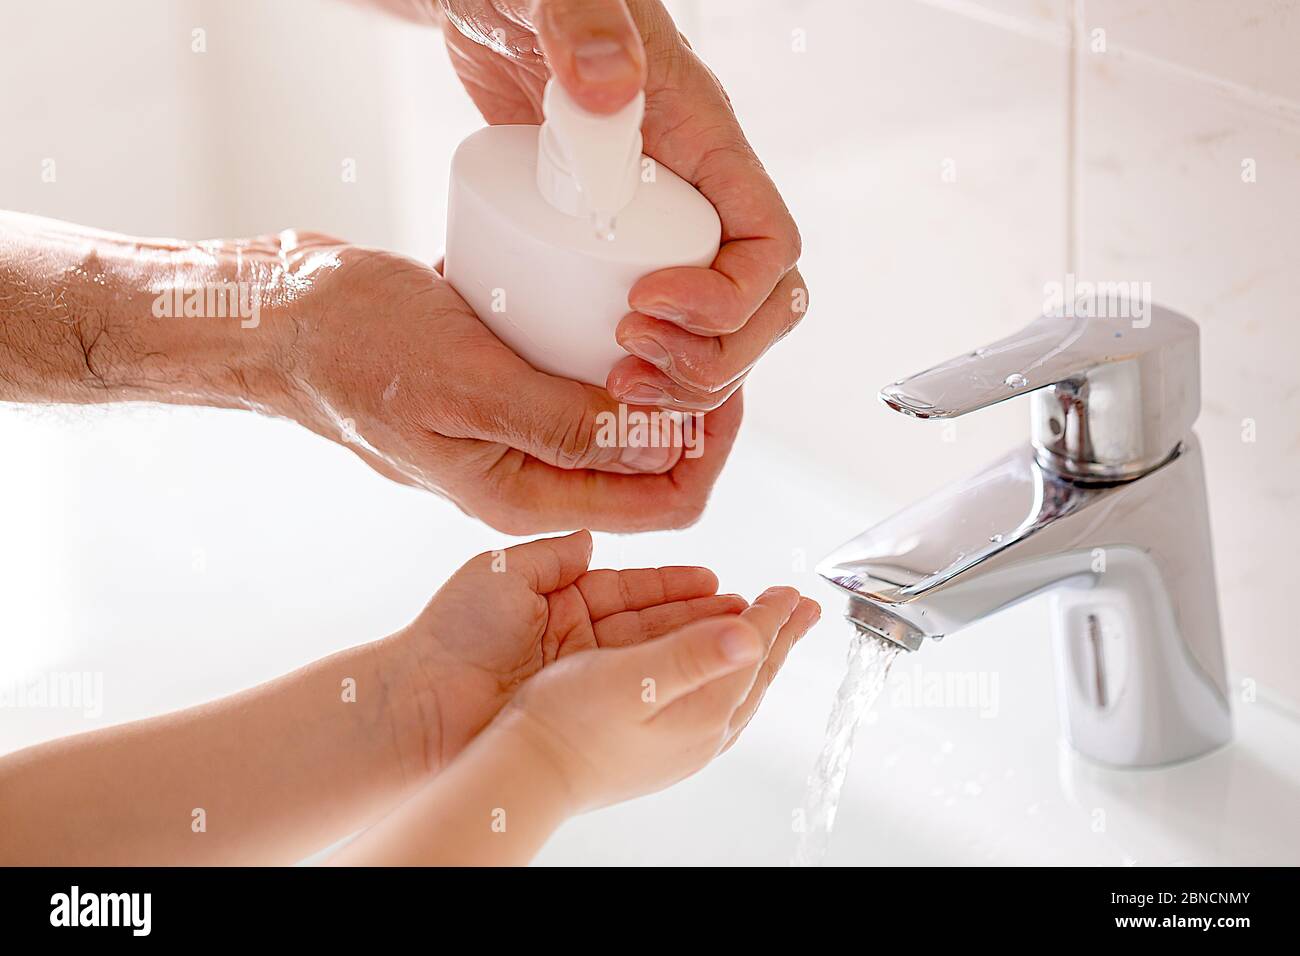 Lavage des mains frottant avec du savon pour la prévention du virus corona Banque D'Images